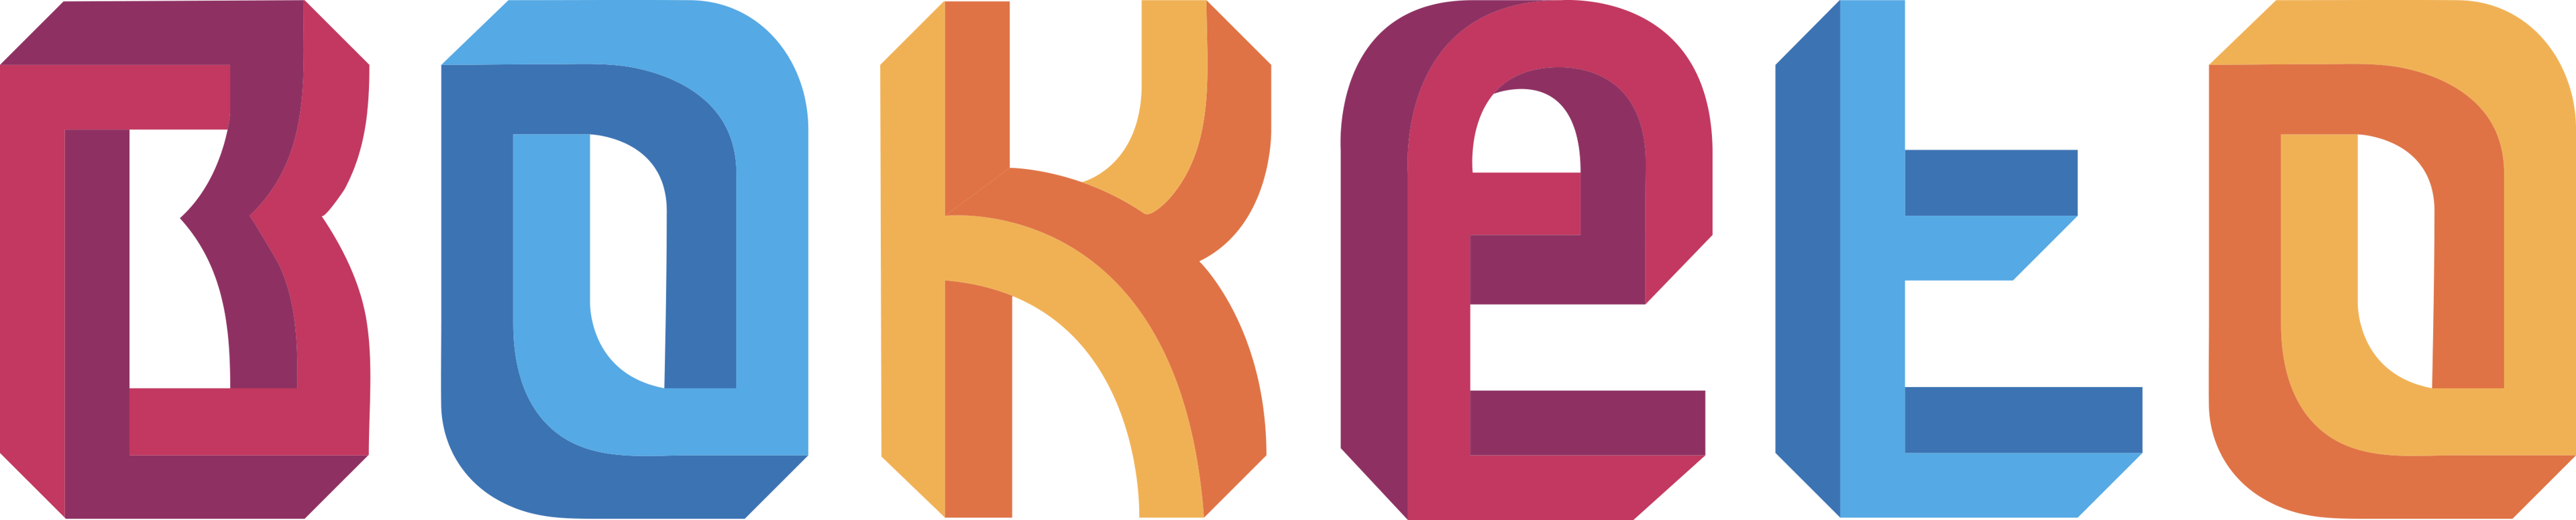 Boketo Media logo